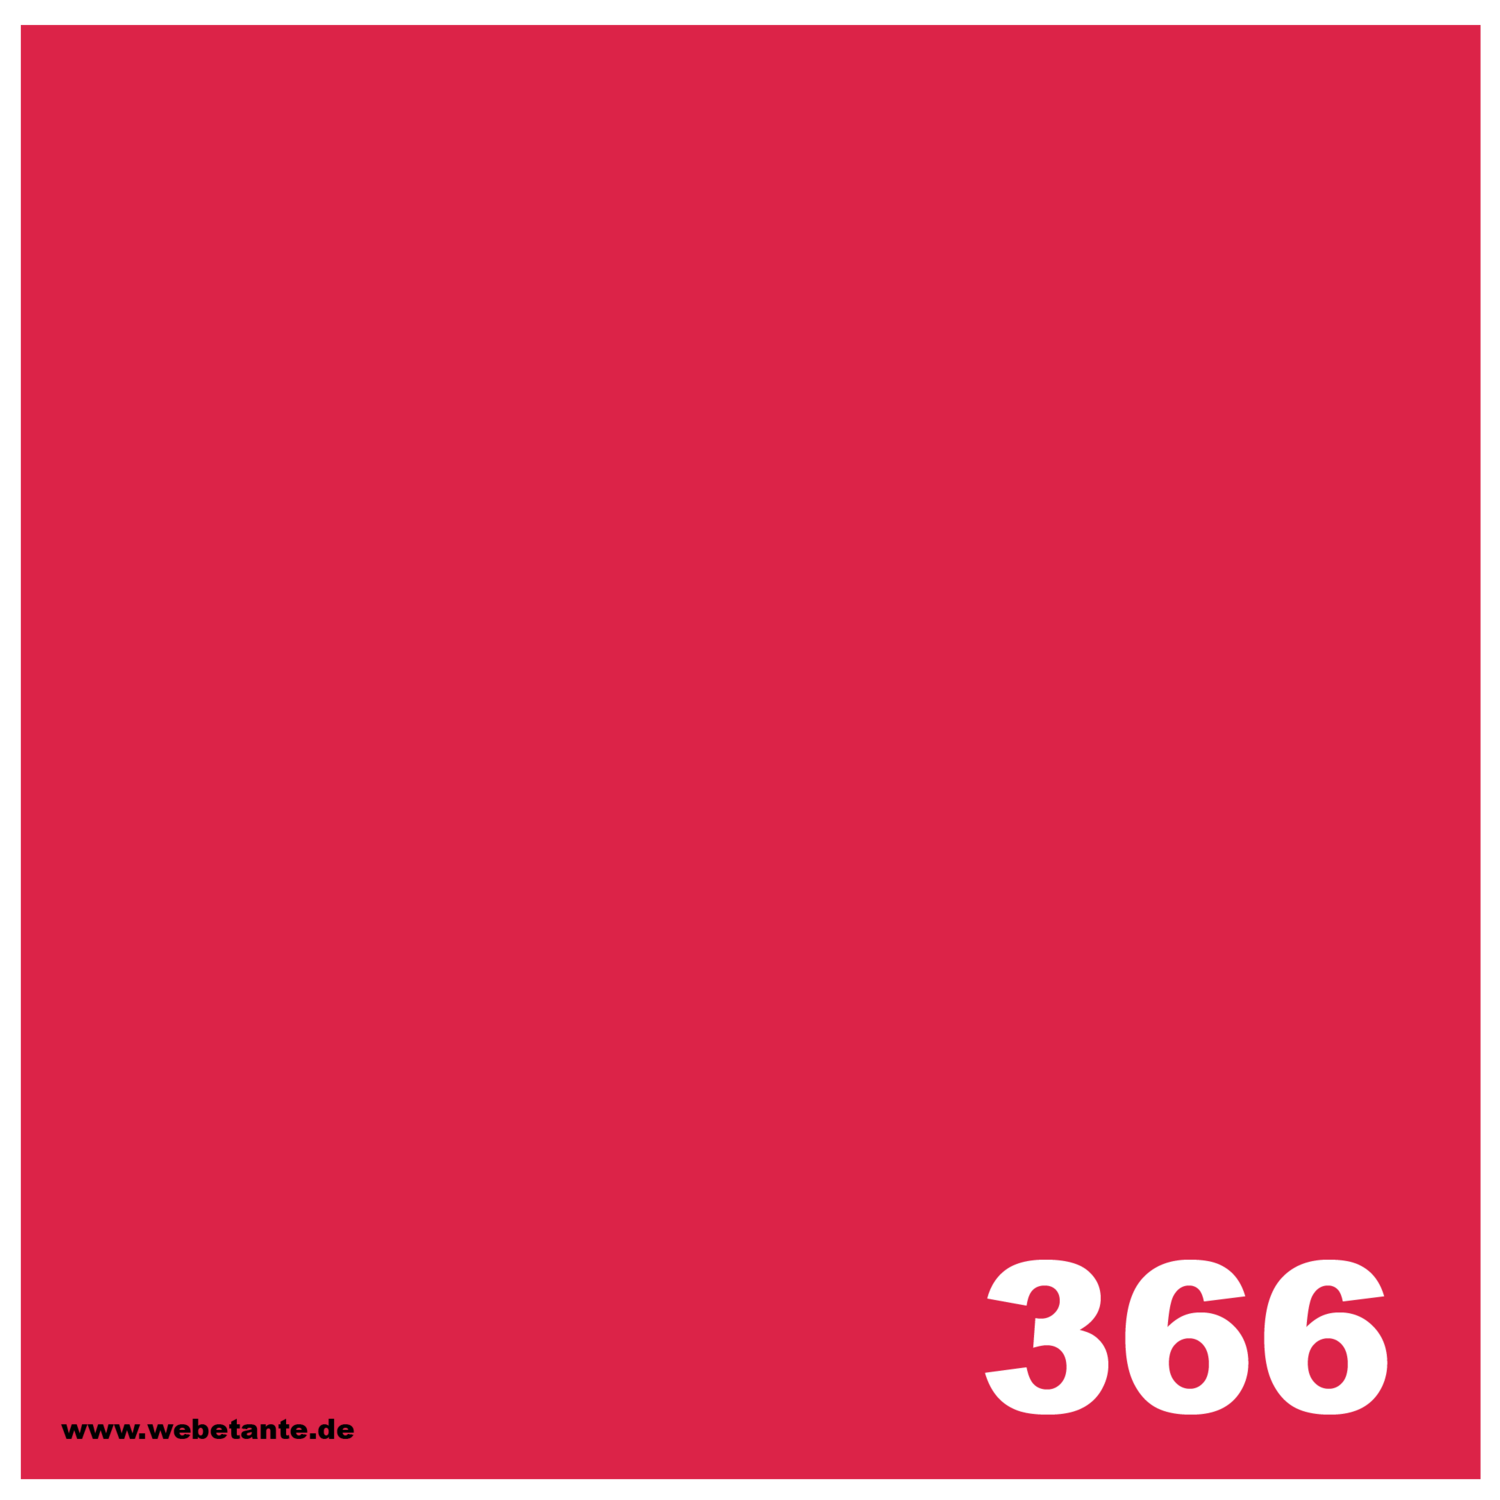 8 oz / 226 g PRO WashFast Acid Dye | 366 Red